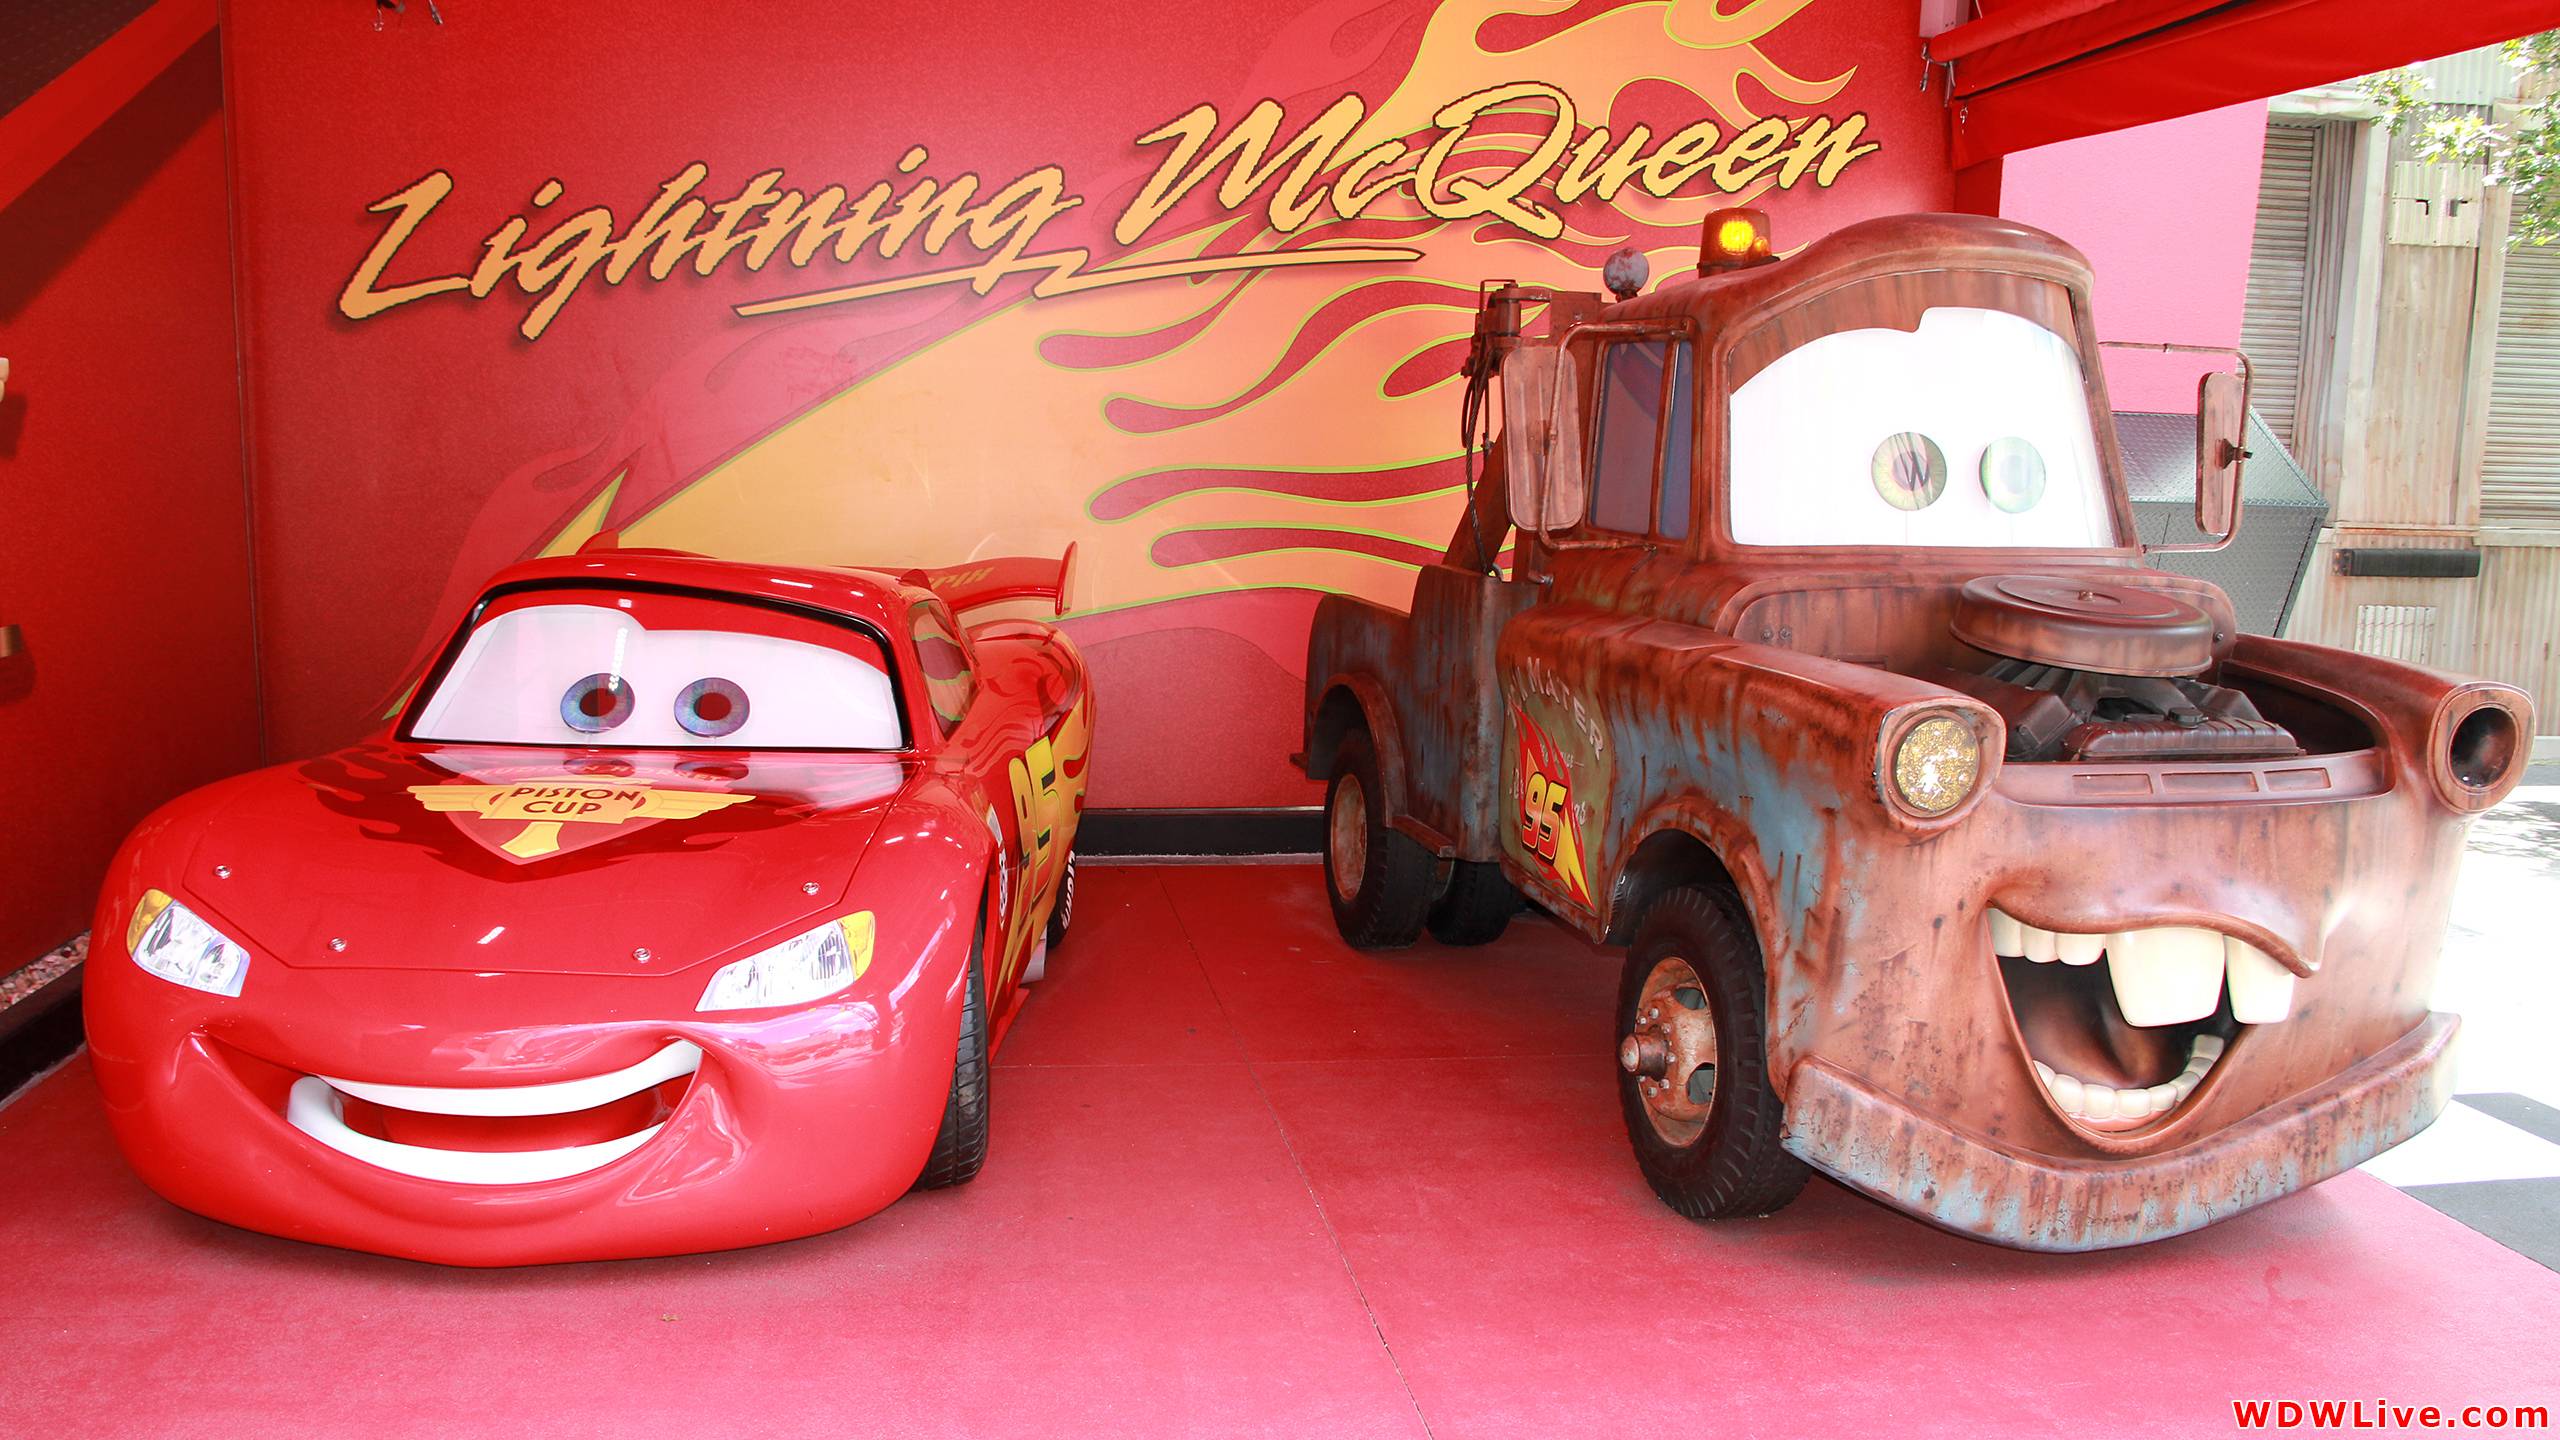 Lightning McQueen: Lightning McQueen and Mater meet and greet at